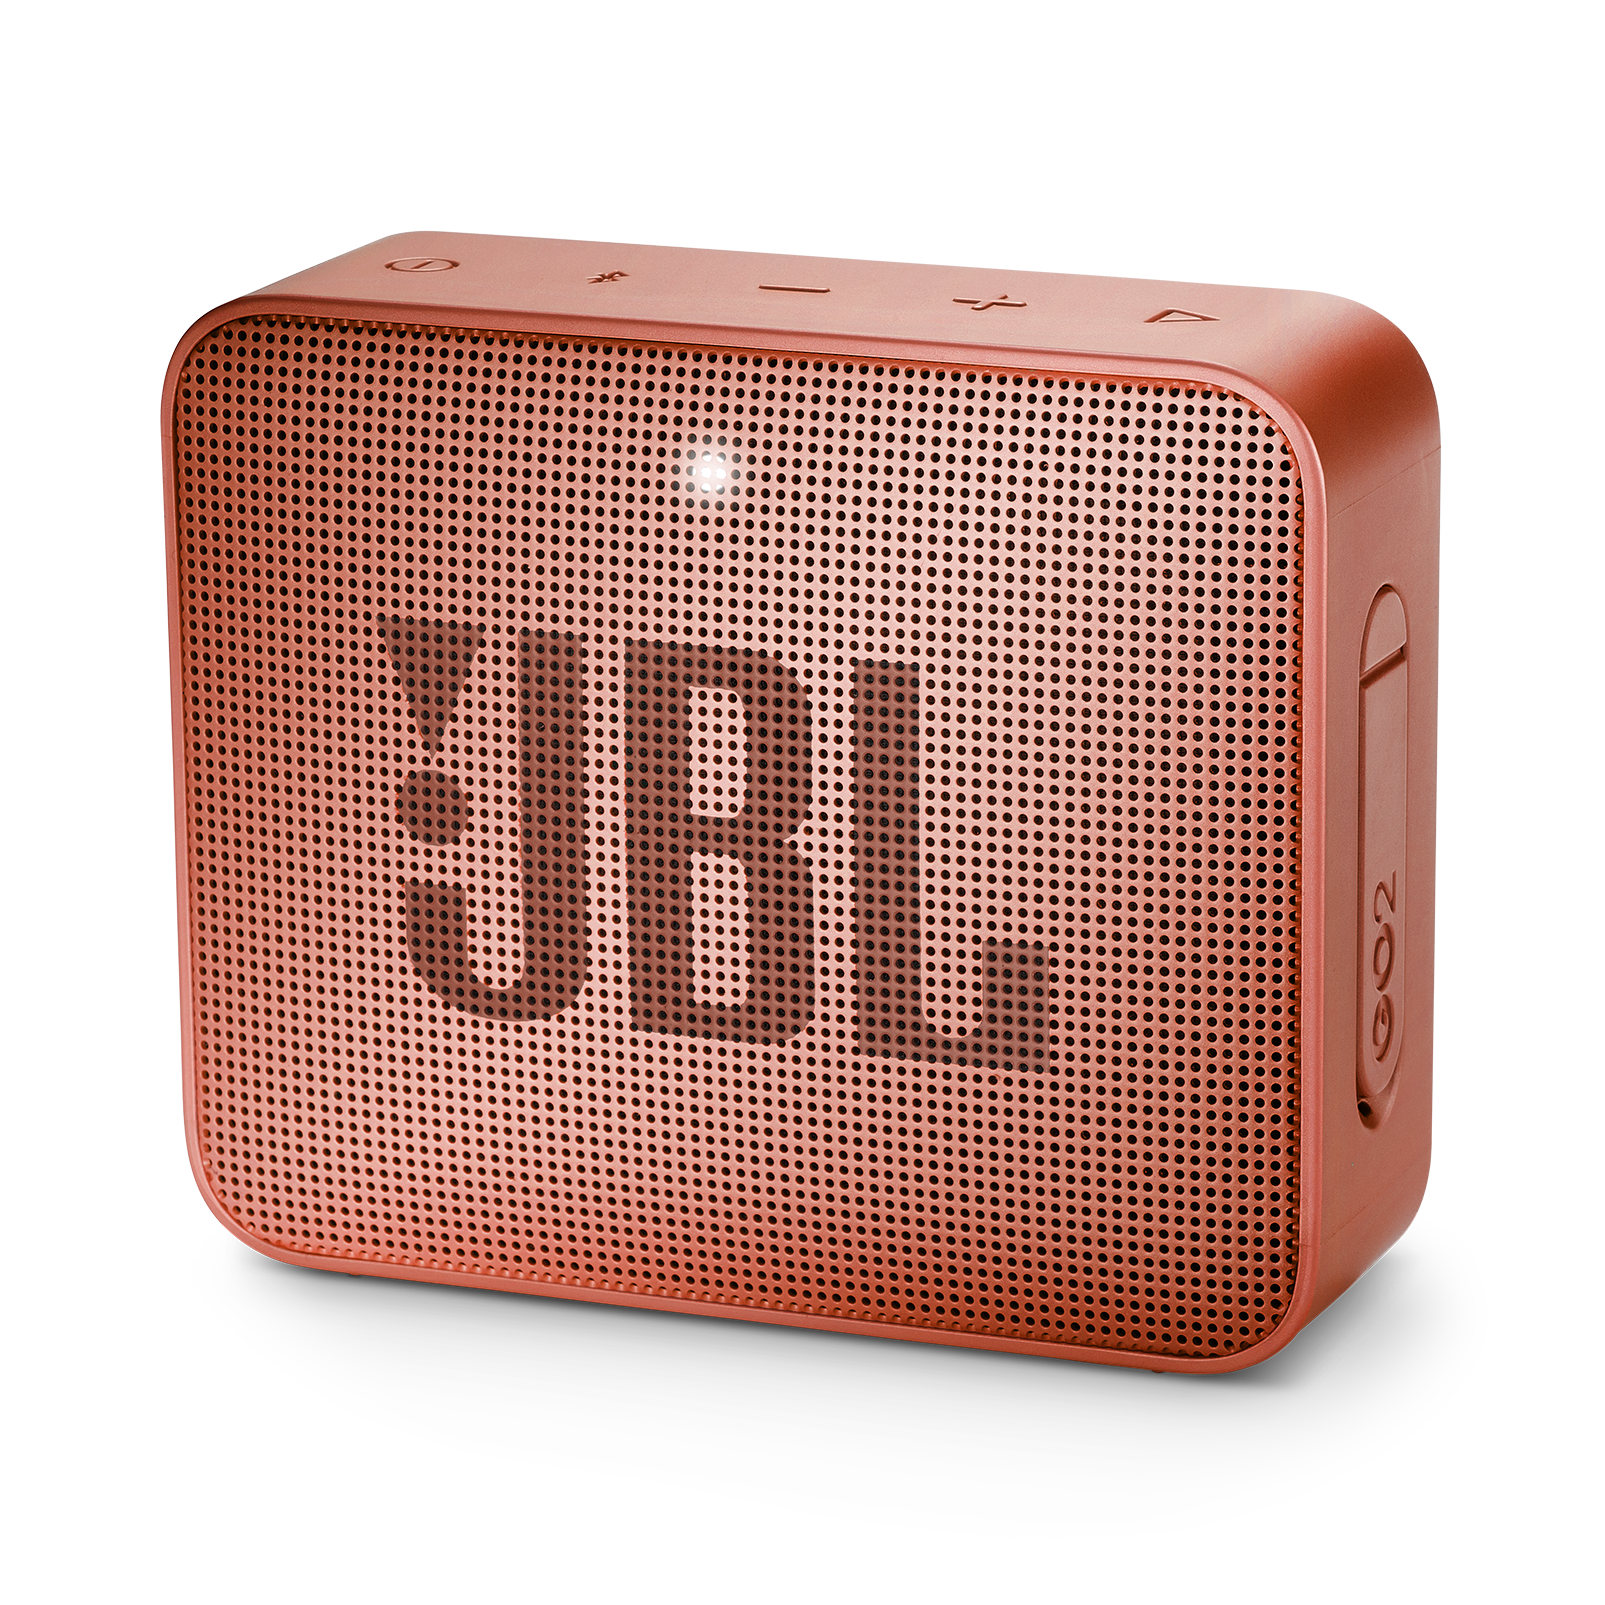 JBL Go 2 - Sunkissed Cinnamon - Portable Bluetooth speaker - Hero